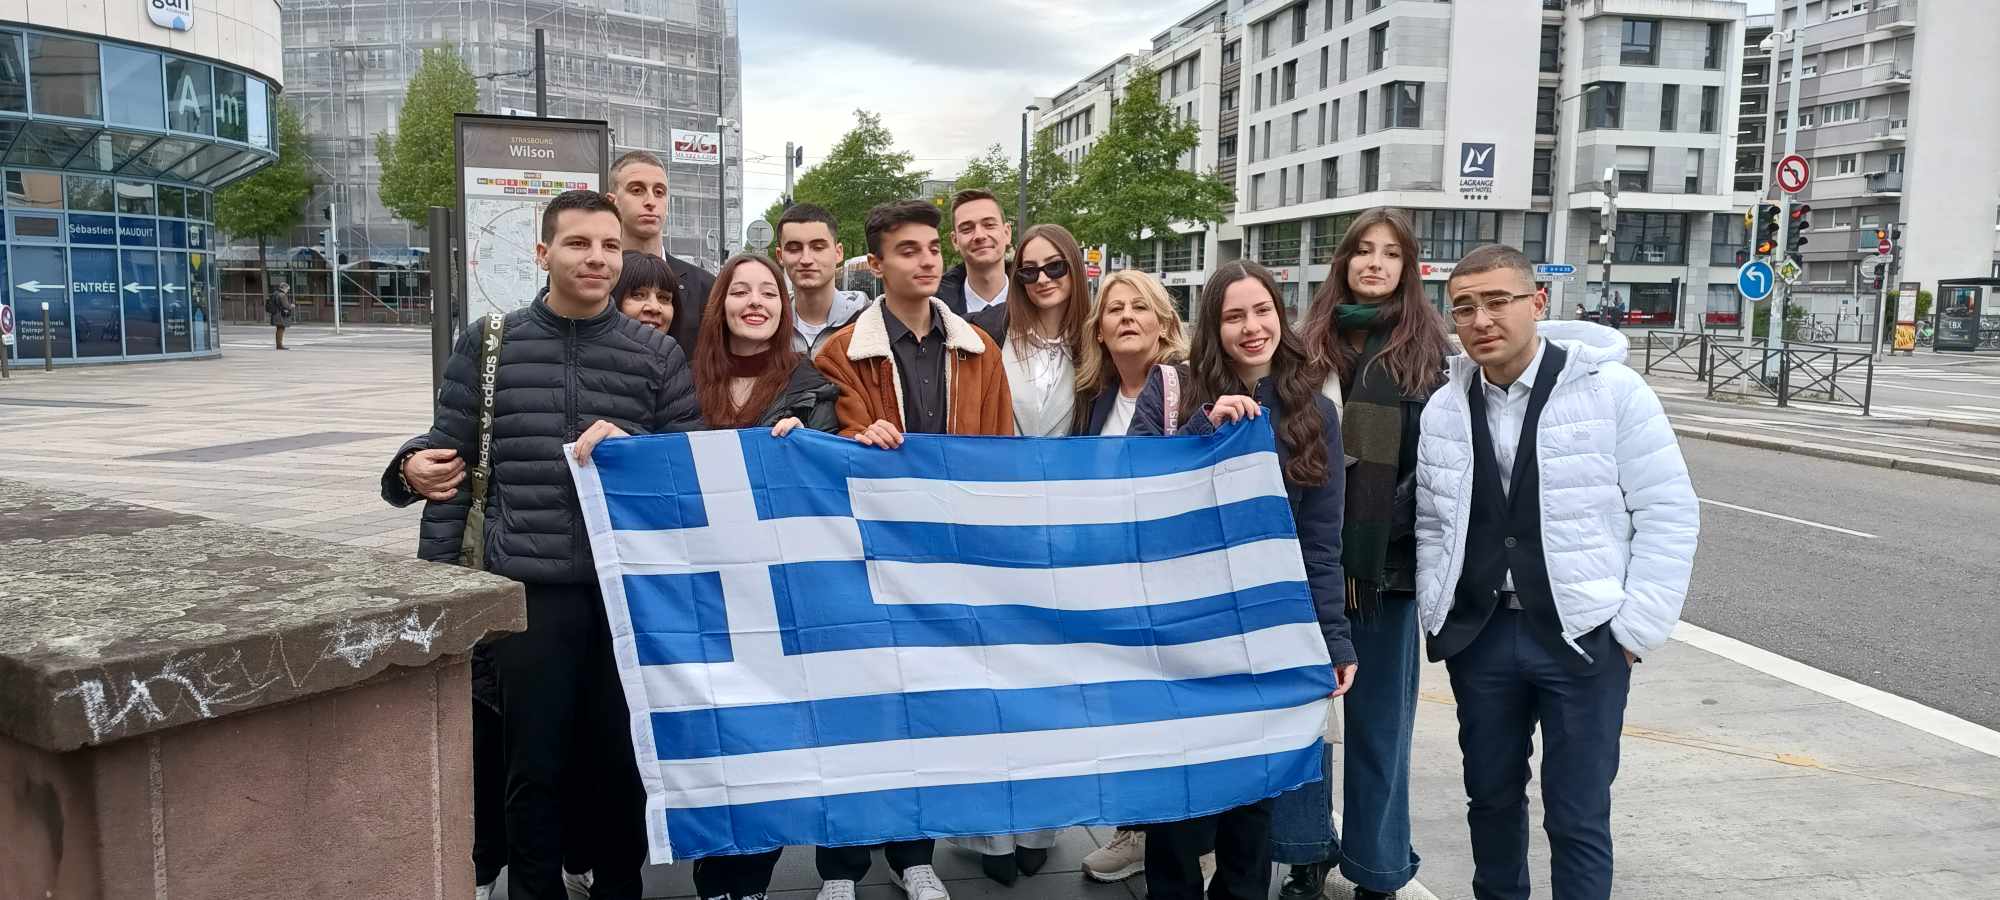 Αντιπροσωπεία μαθητών από τη Φλώρινα και τα Γρεβενά στο πρόγραμμα “Euroscola” (βίντεο)